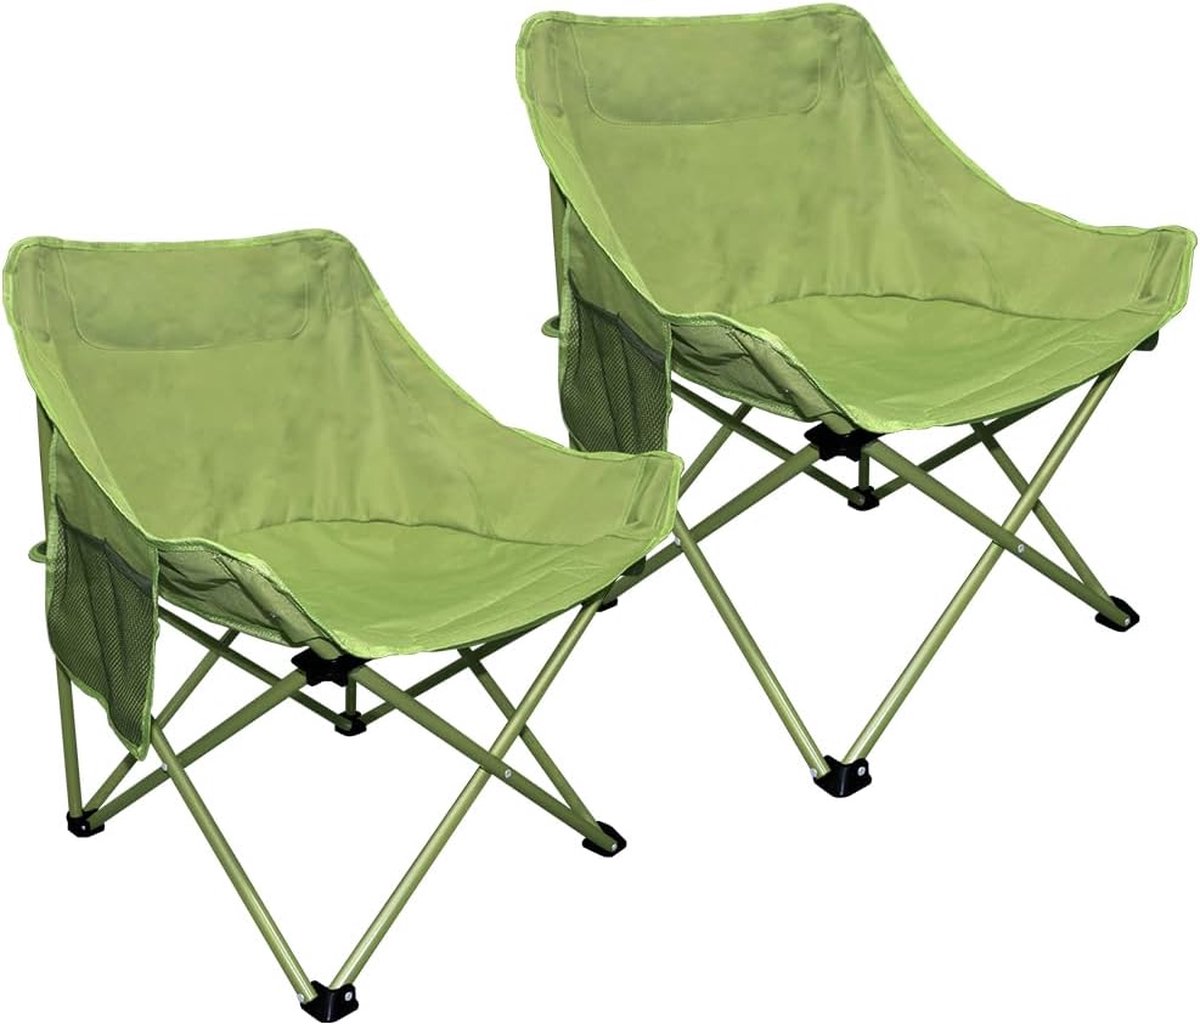 2 opvouwbare campingstoelen, geschikt voor buiten, terras, tuin, picknick, strandvakantie, camperreizen, groen. (4800437472564)